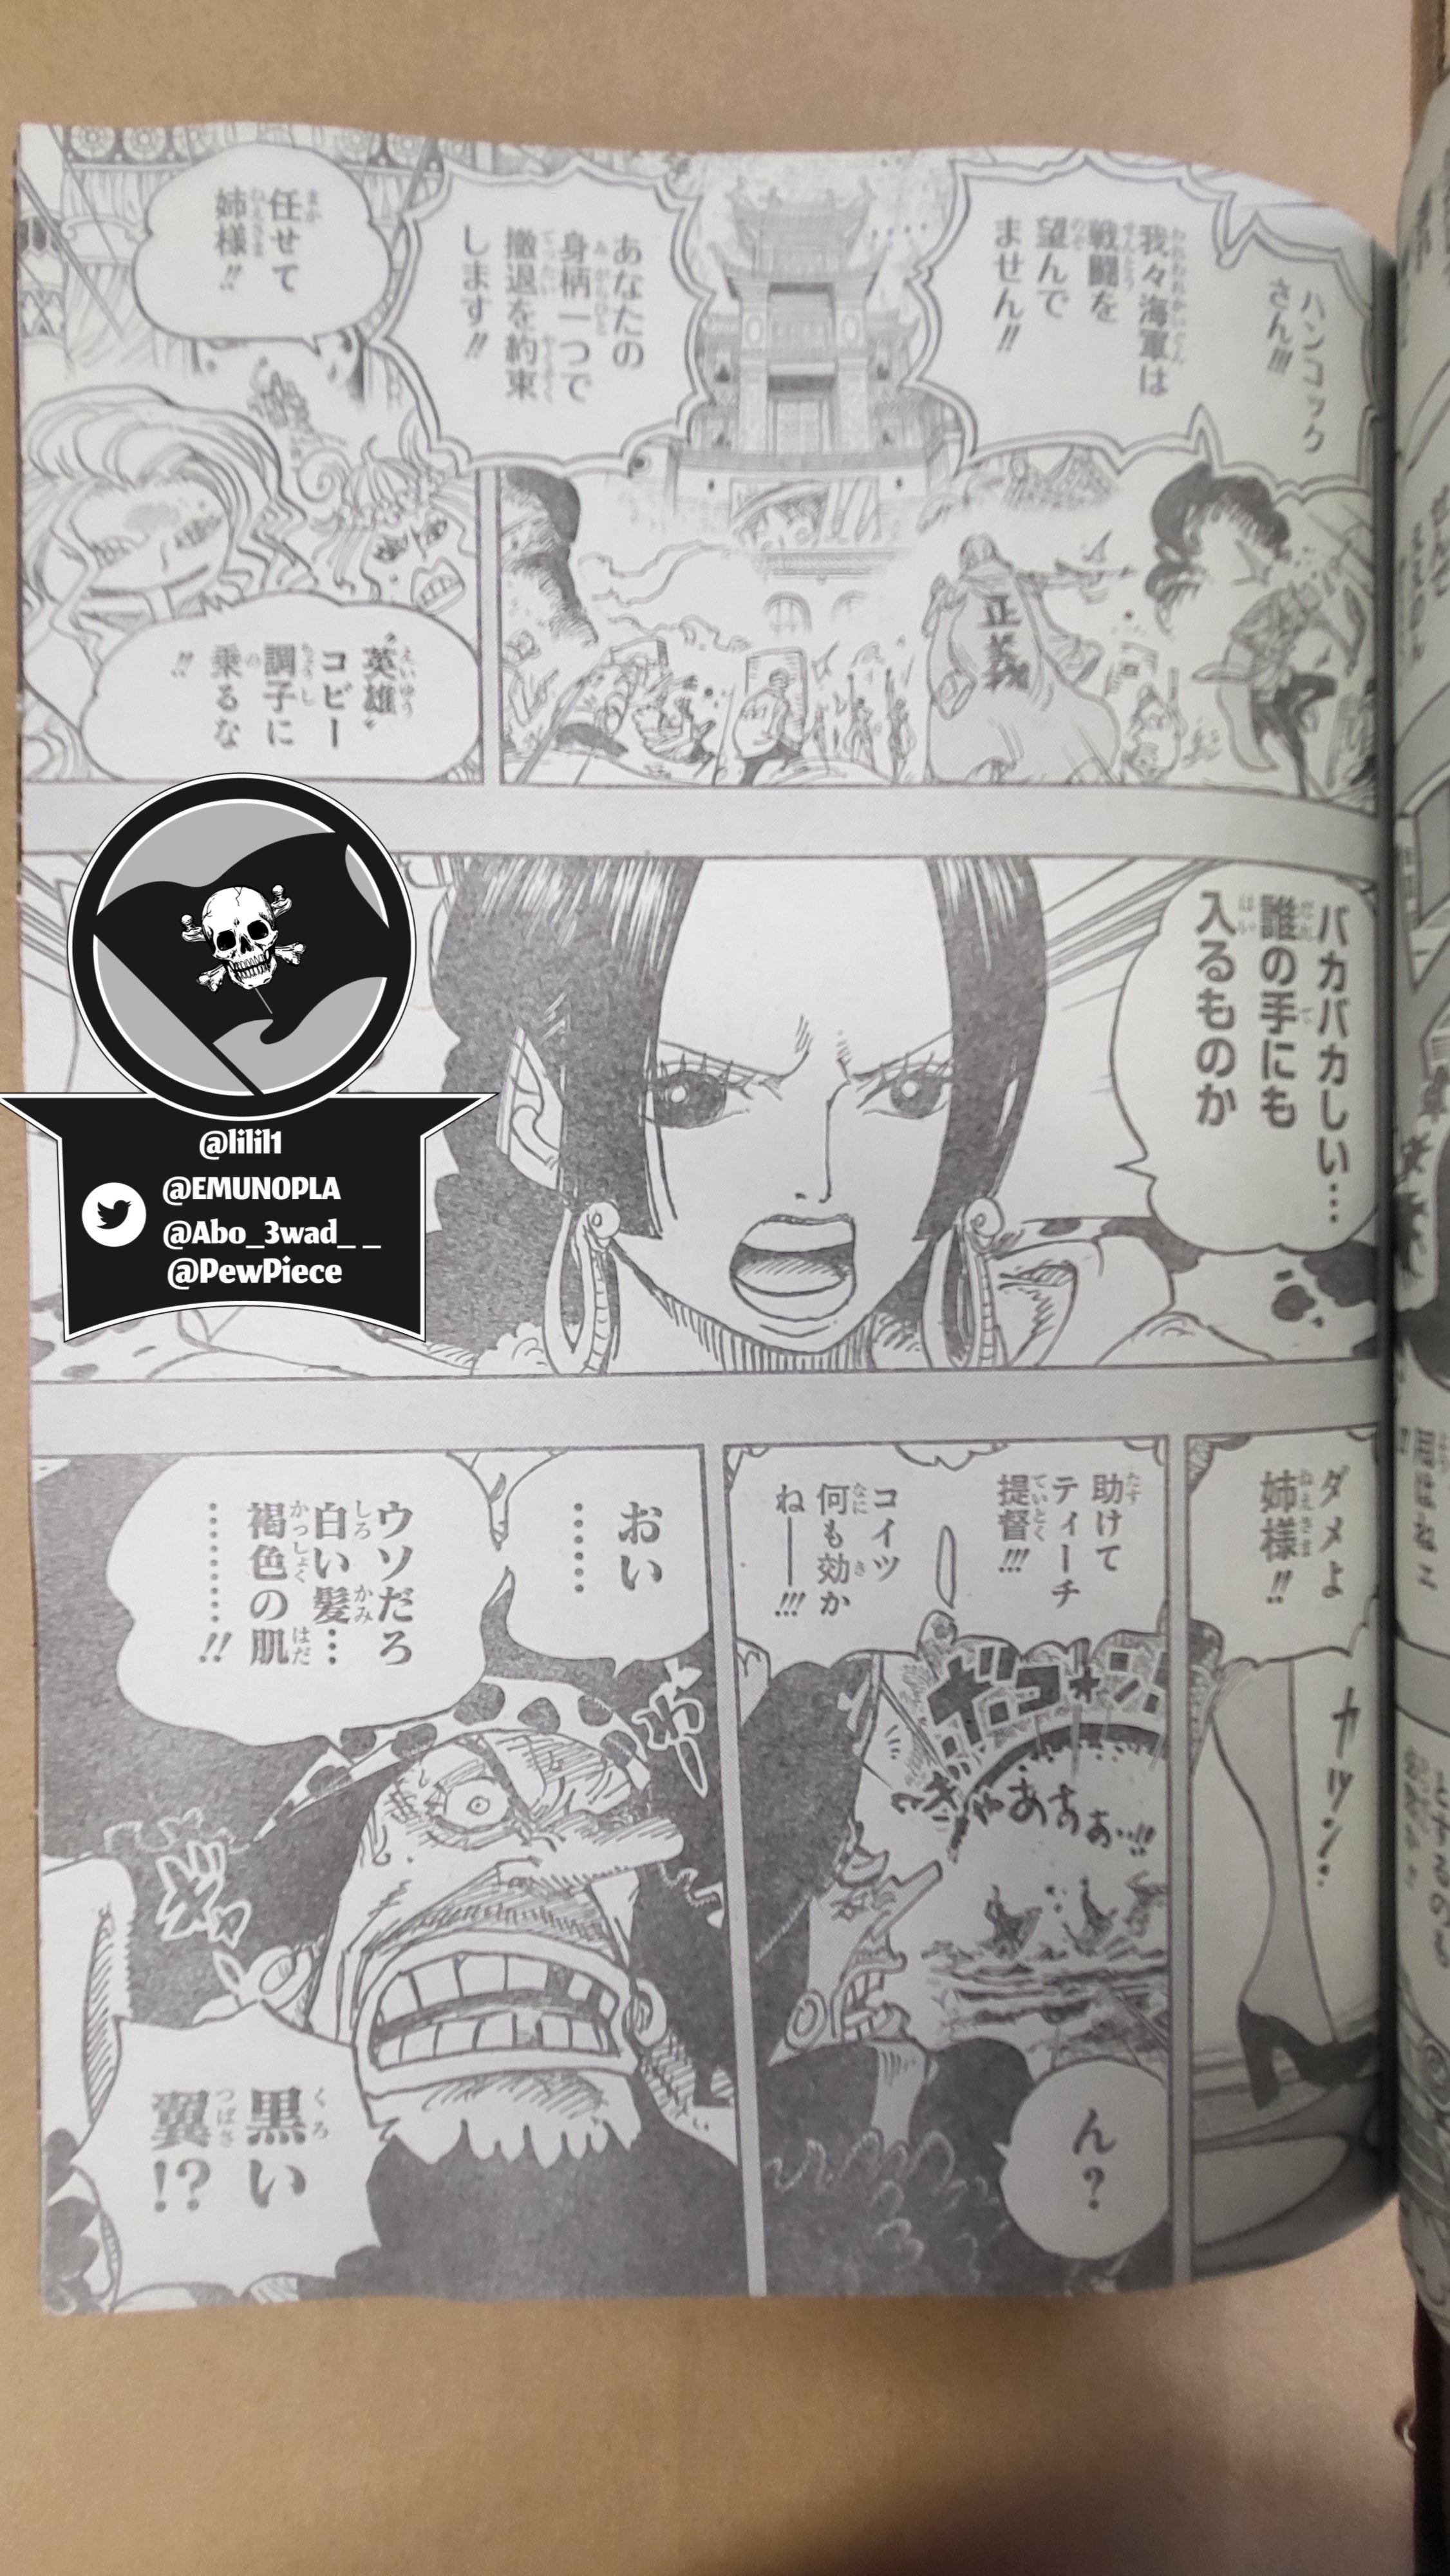 Spoiler - One Piece Chapter 1060 Spoiler Pics & Summaries